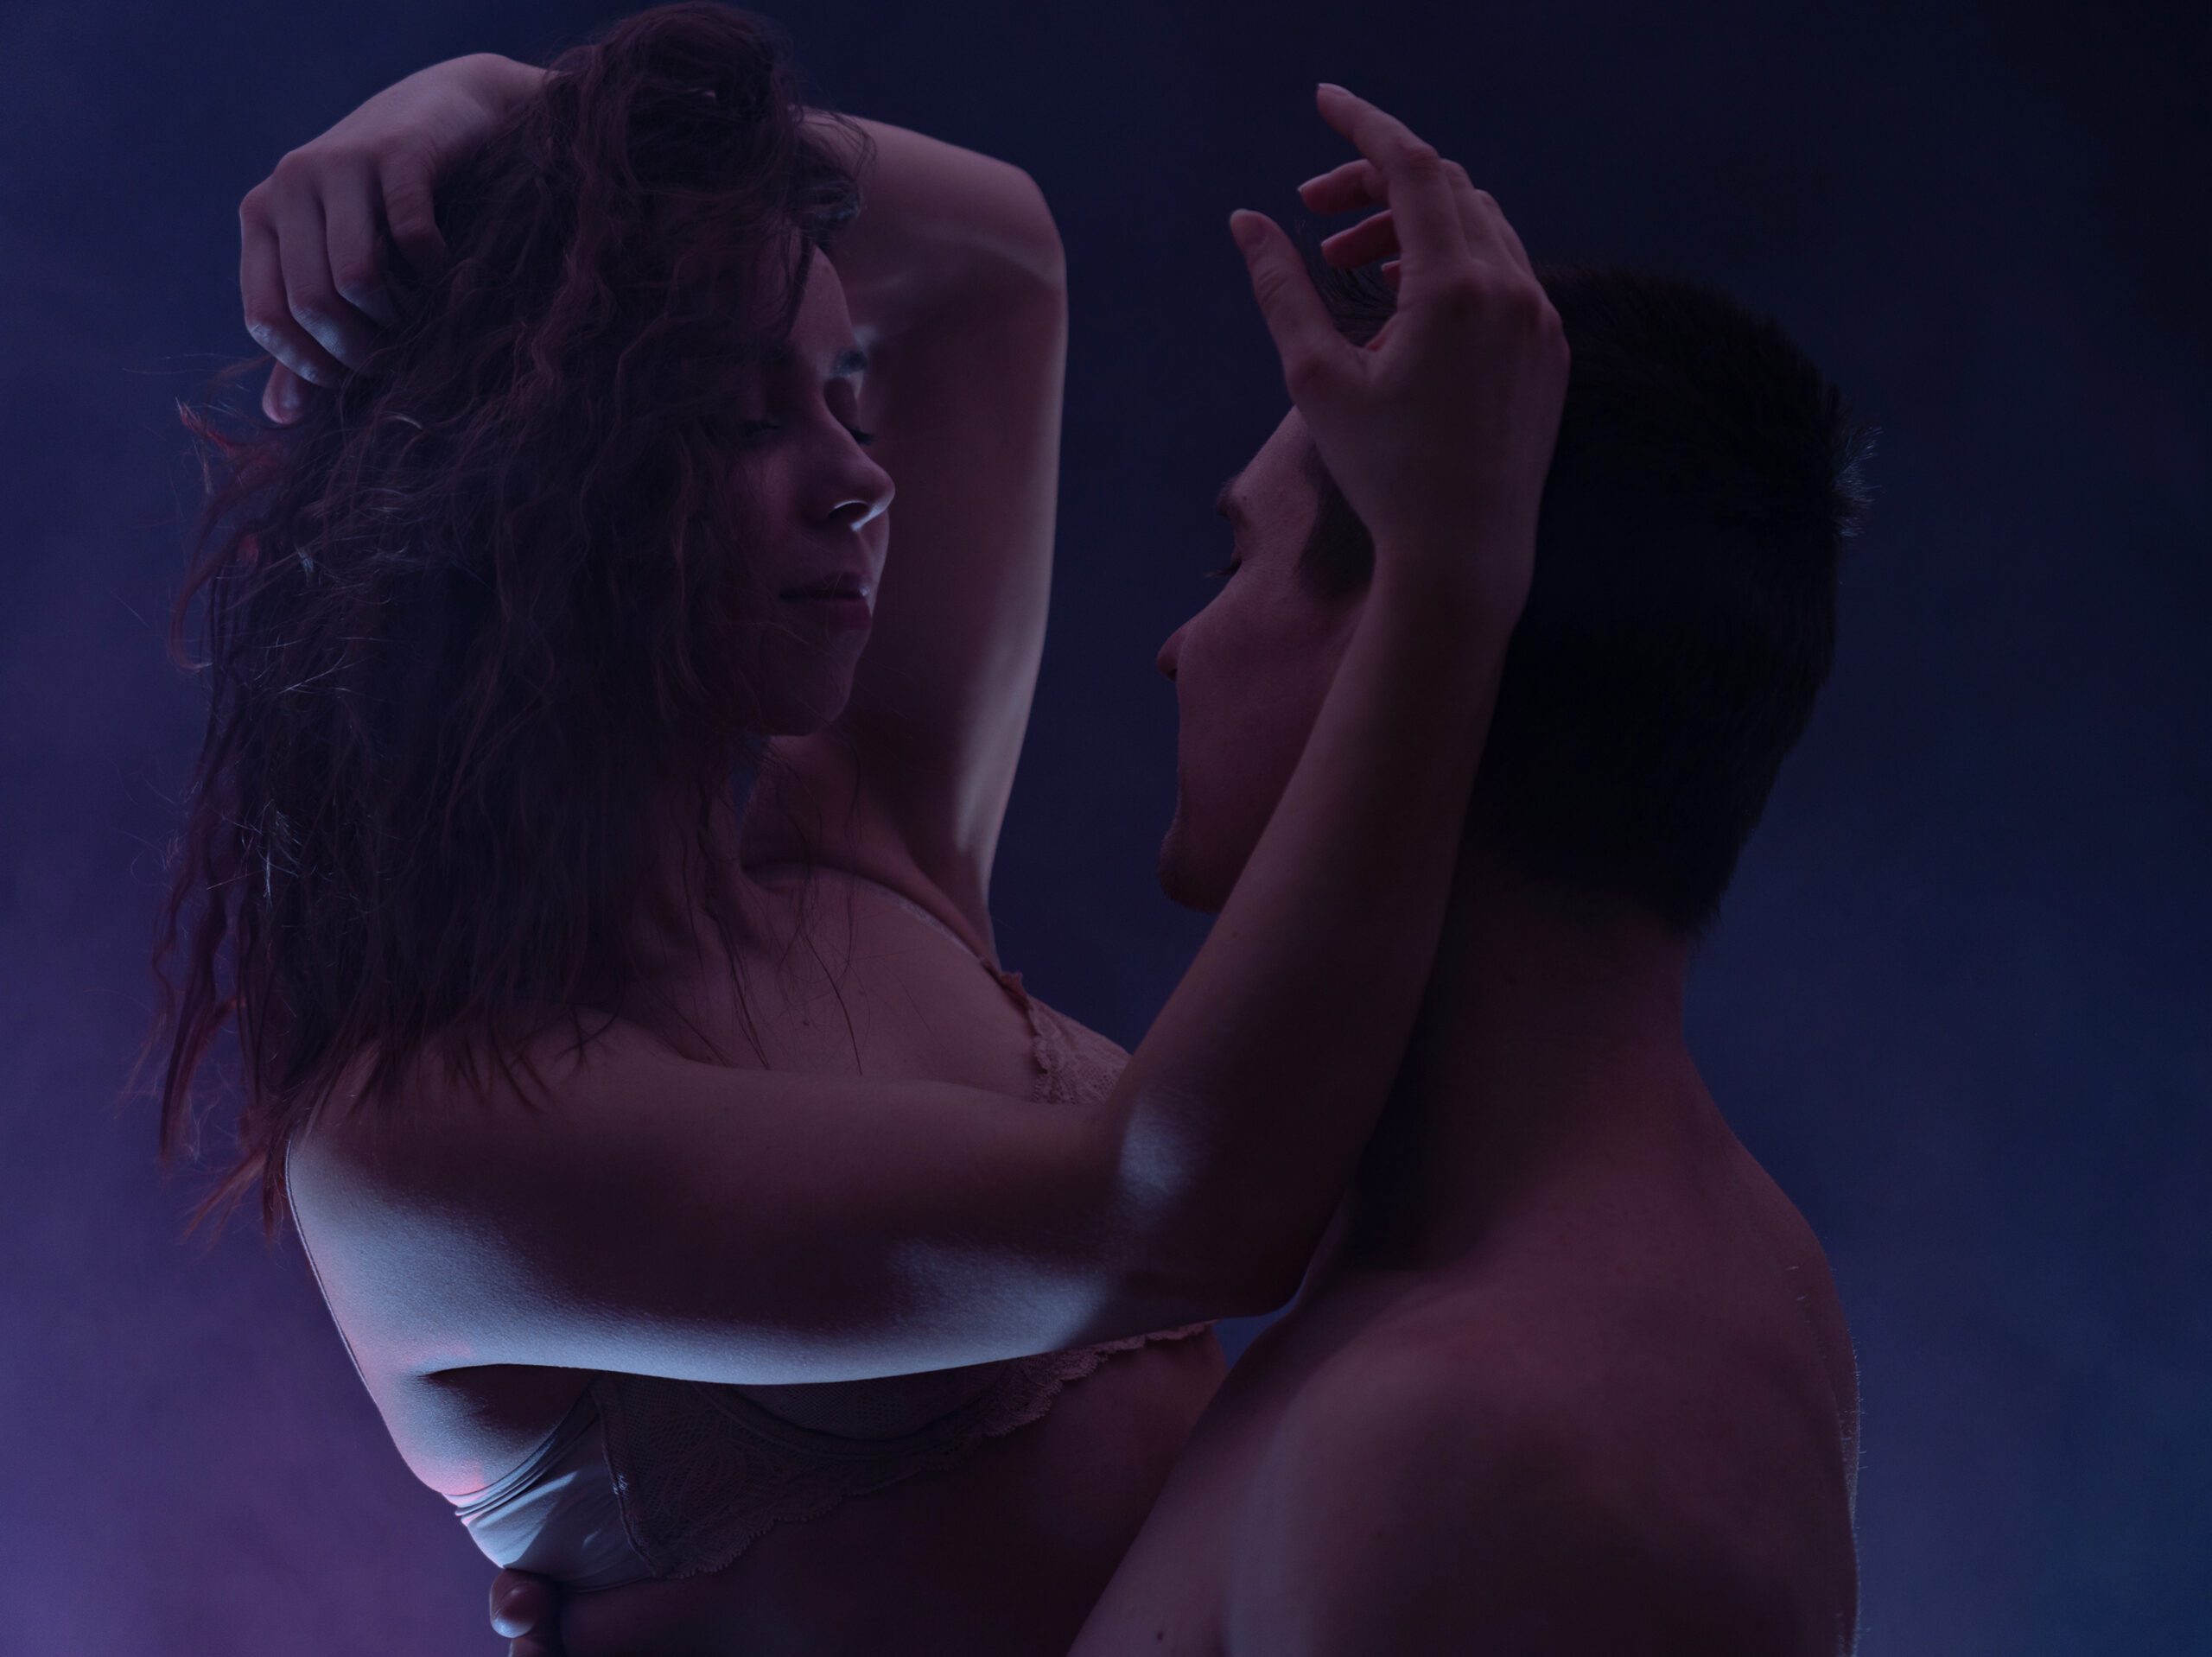 RubPage: Los clientes masculinos encuentran masajes corporales eróticos en sus ciudades